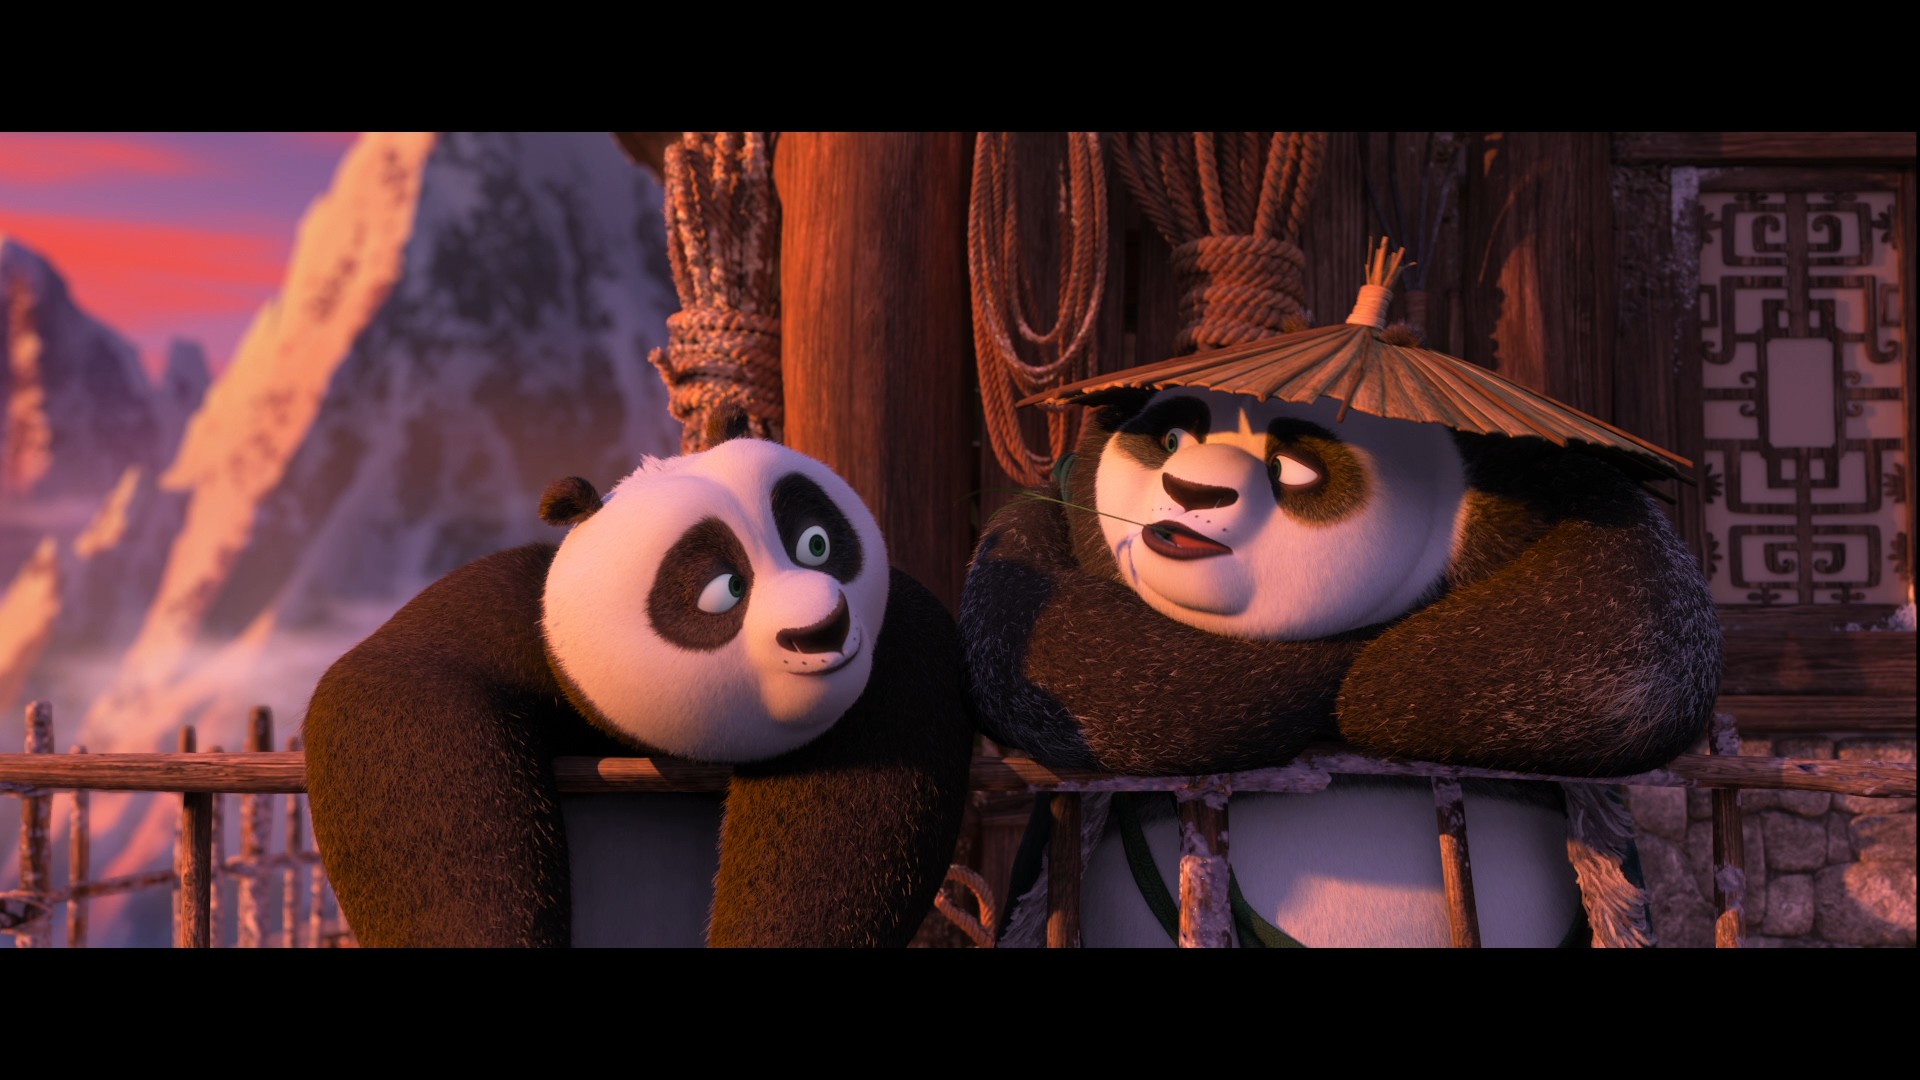 [功夫熊猫3].Kung.Fu.Panda.3.2016.HK.3D.BluRay.1080p.AVC.DTS-HD.MA.7.1-TTG   37.03G-8.jpg